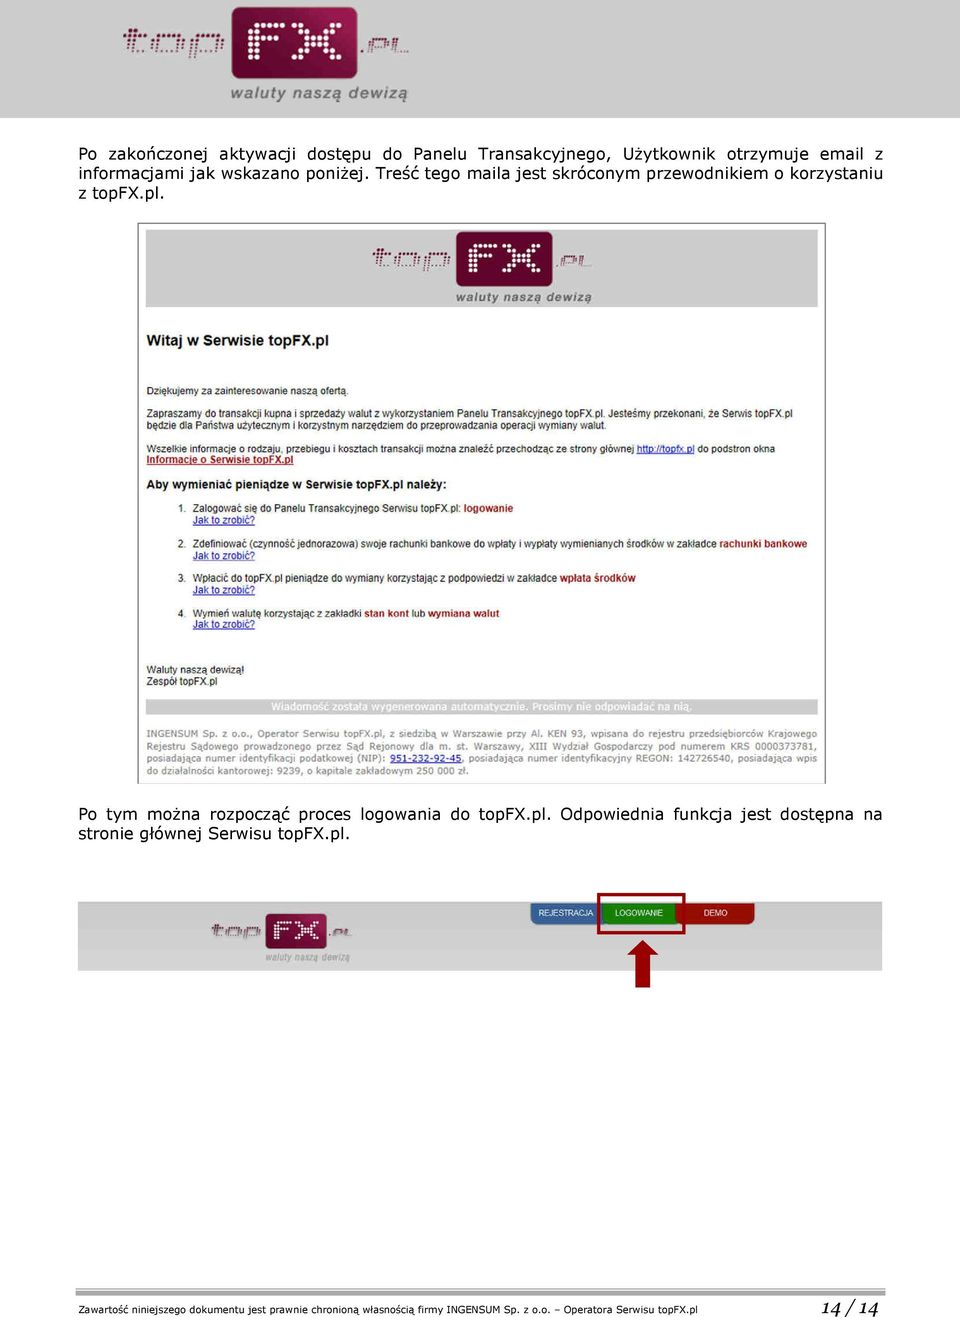 Po tym można rozpocząć proces logowania do topfx.pl.